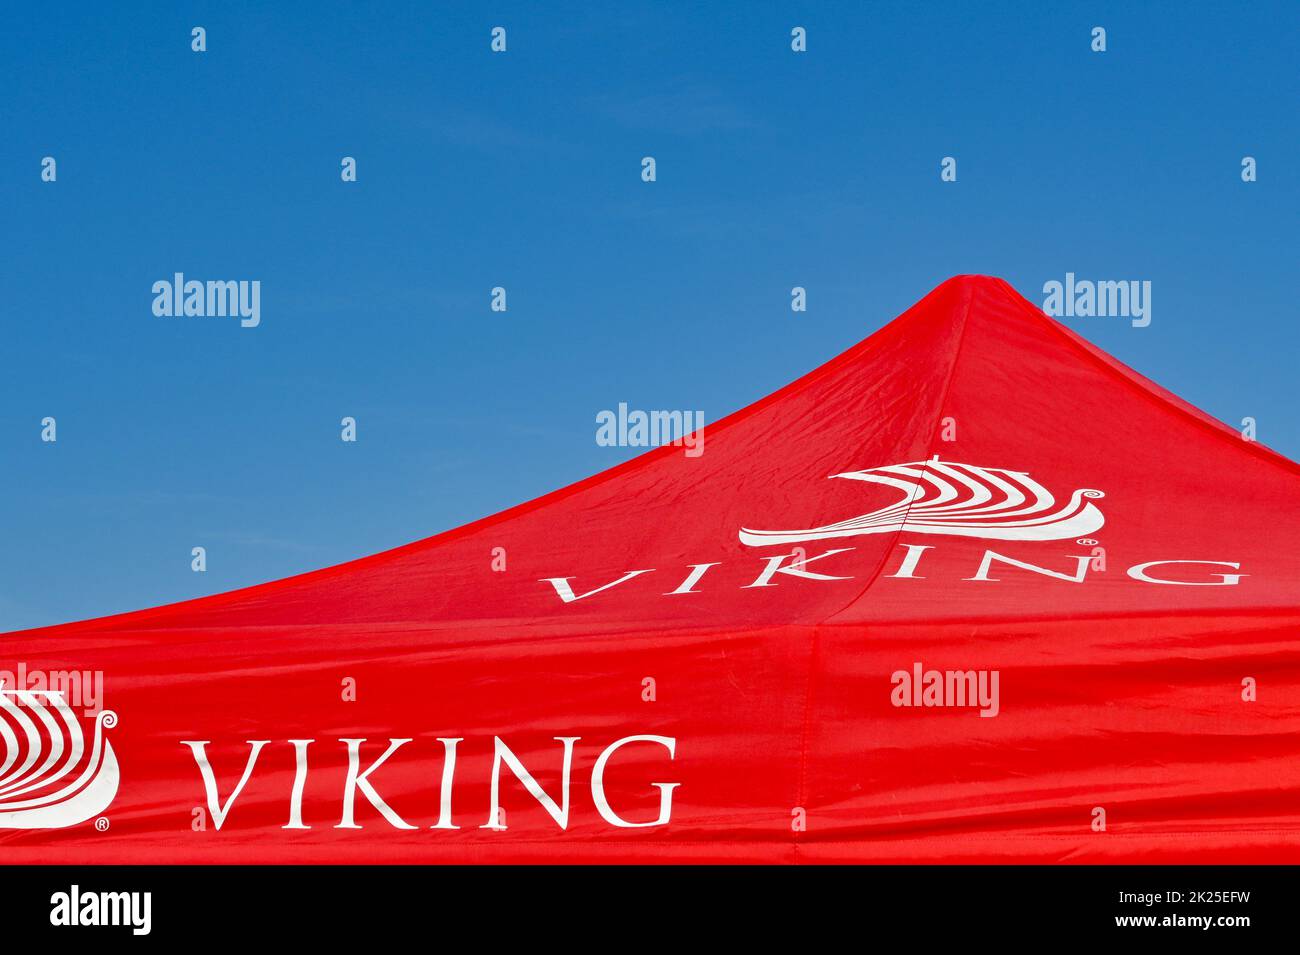 Baldacchino rosso con il logo della compagnia di viaggi Viking River Cruises contro un cielo blu profondo. Nessuna gente. Foto Stock